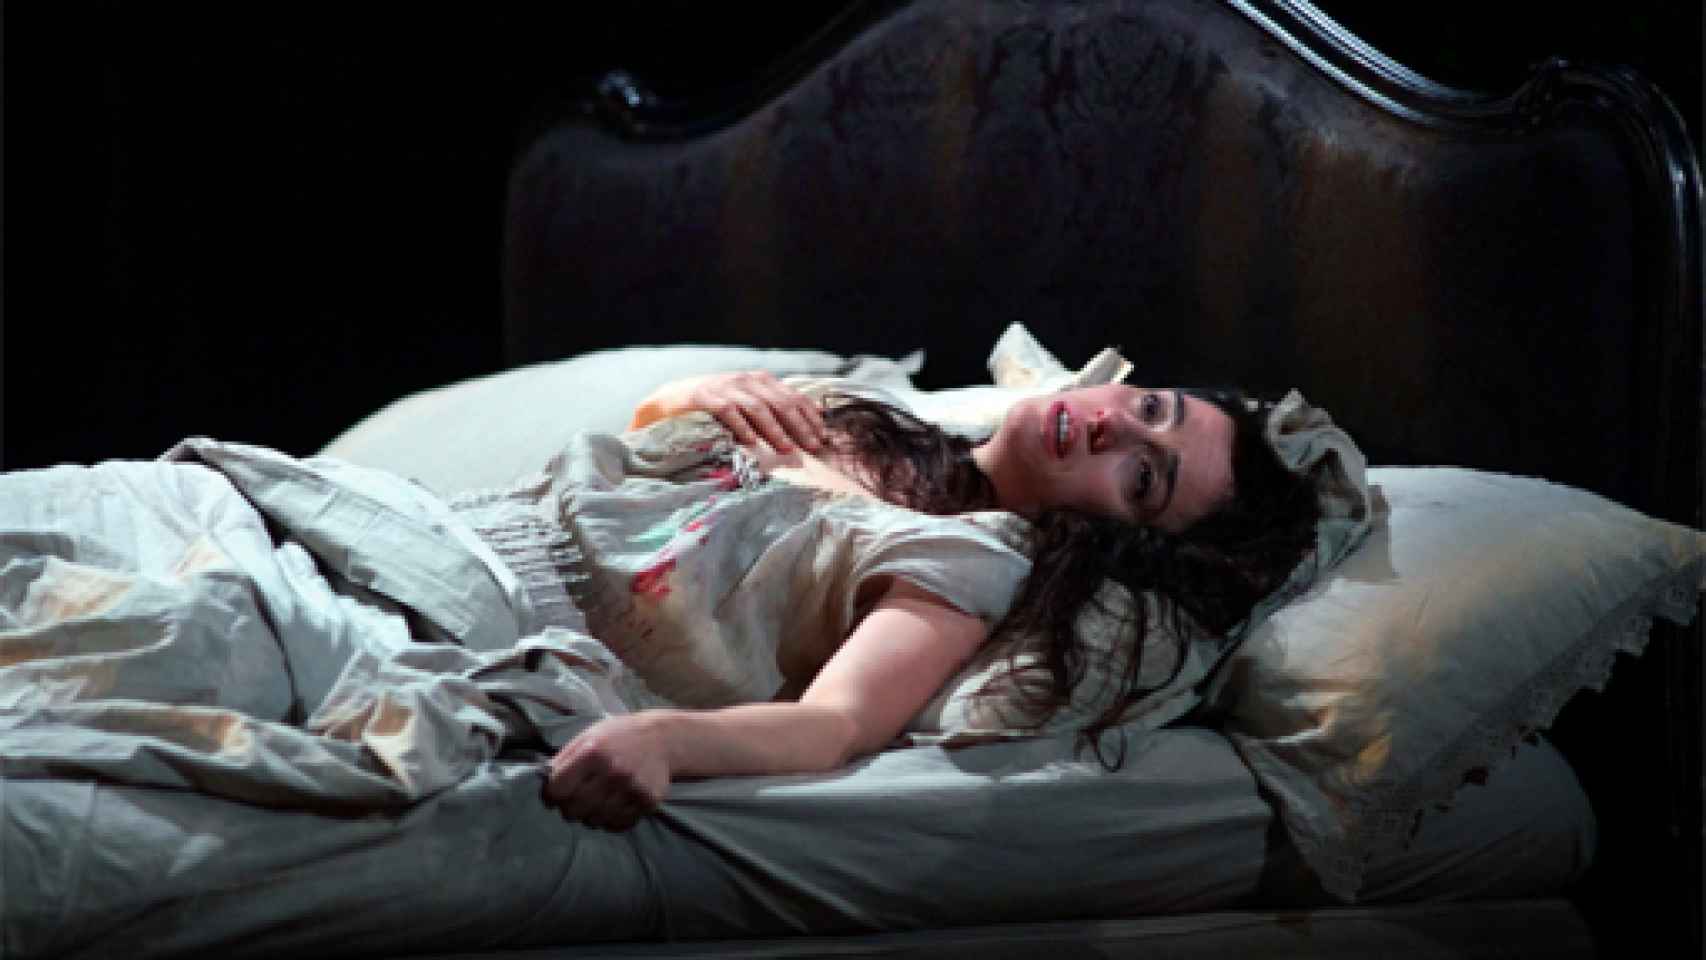 Image: El Real acentúa el drama de La Traviata